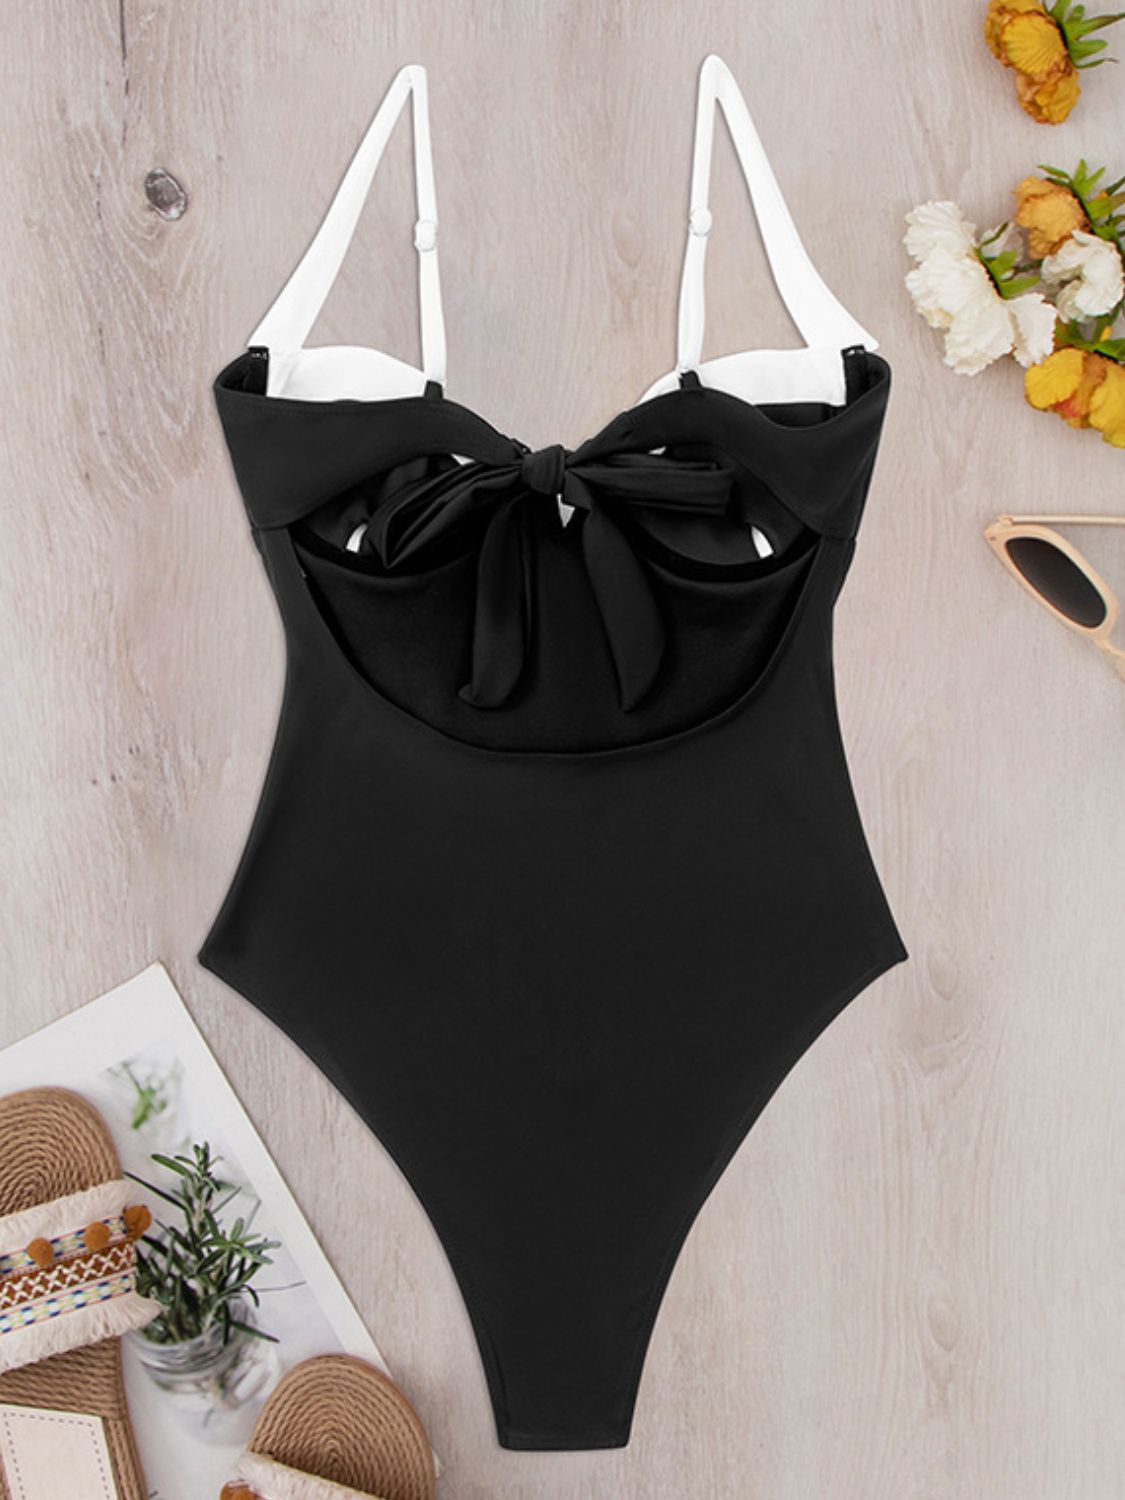 TEEK - Black Tied Adjustable Strap Swimsuit SWIMWEAR TEEK Trend   